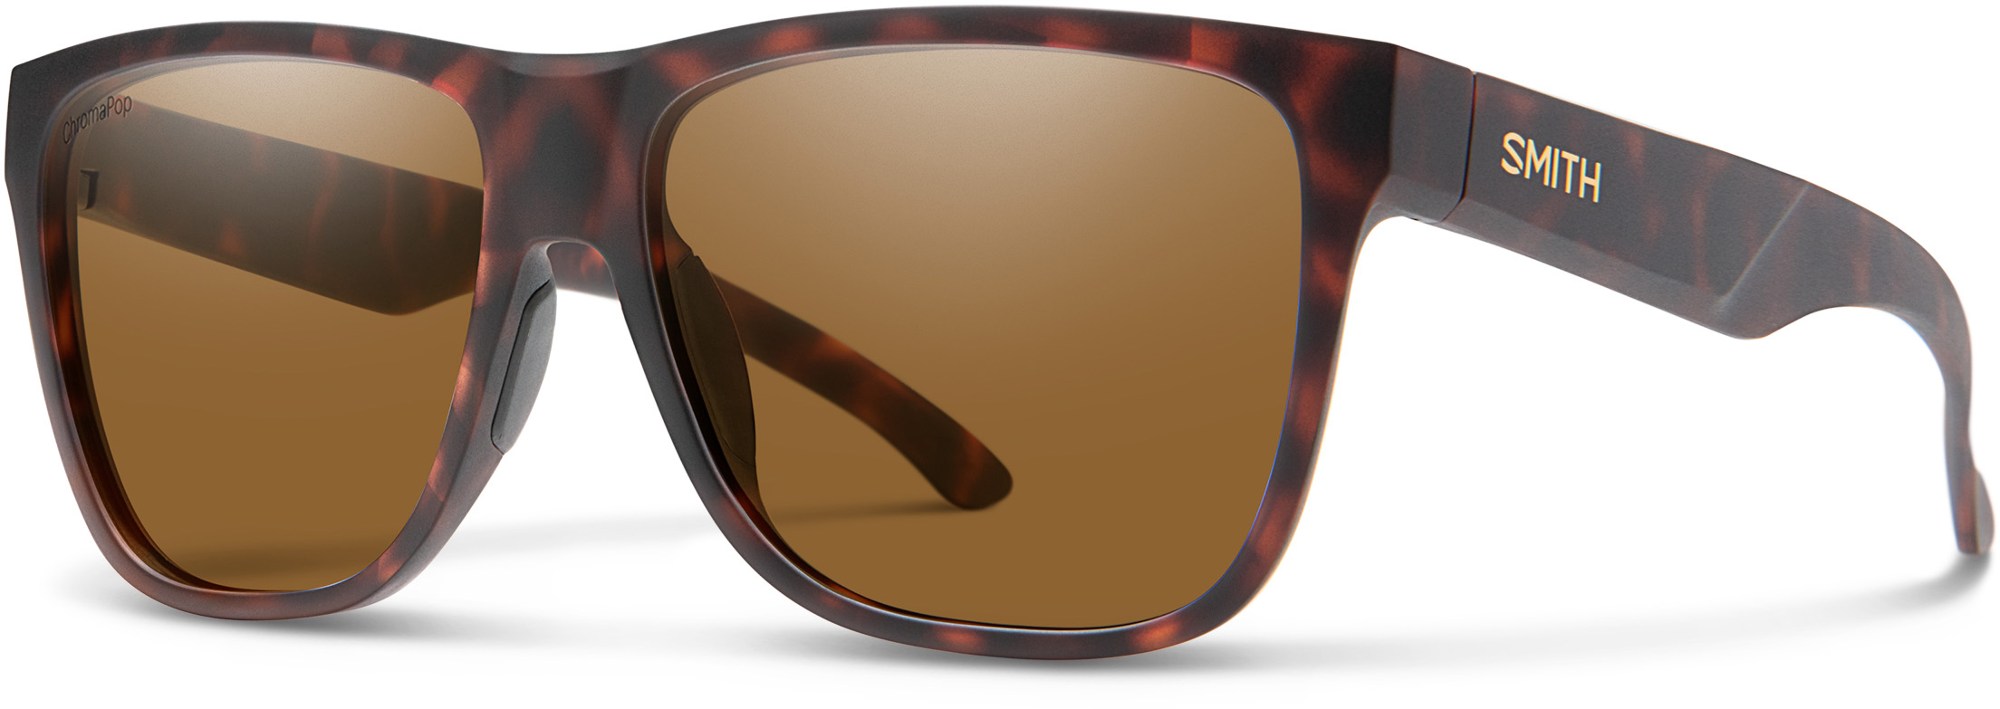 цена Поляризованные солнцезащитные очки Lowdown XL 2 ChromaPop Smith, коричневый